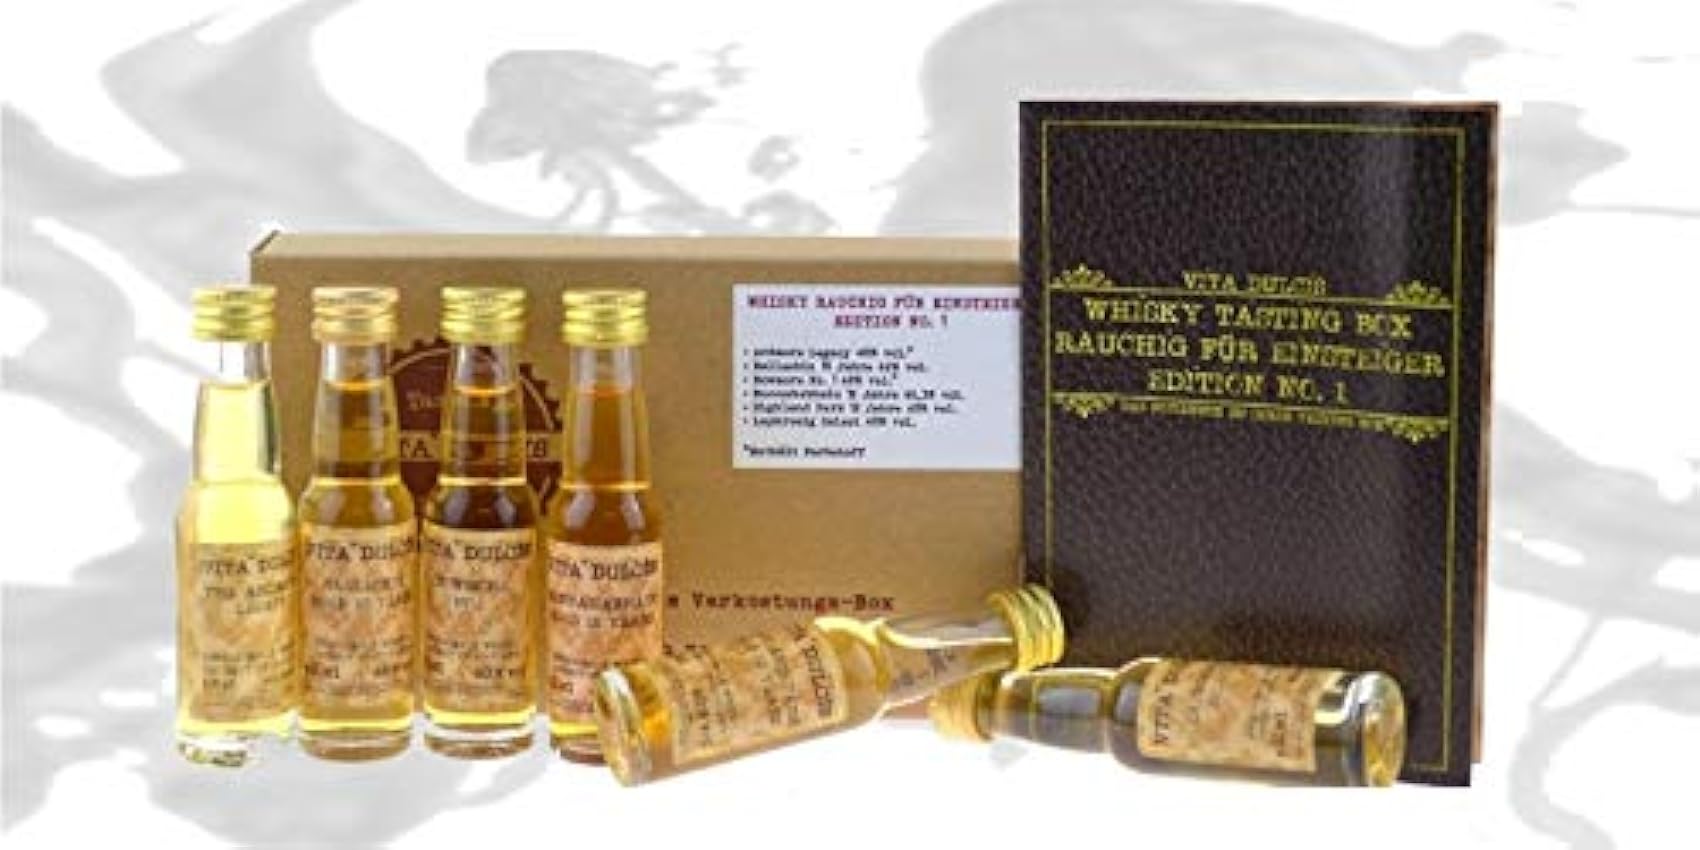 exklusiv Vita Dulcis Tasting Box Whisky Nr. 1 rauchig f